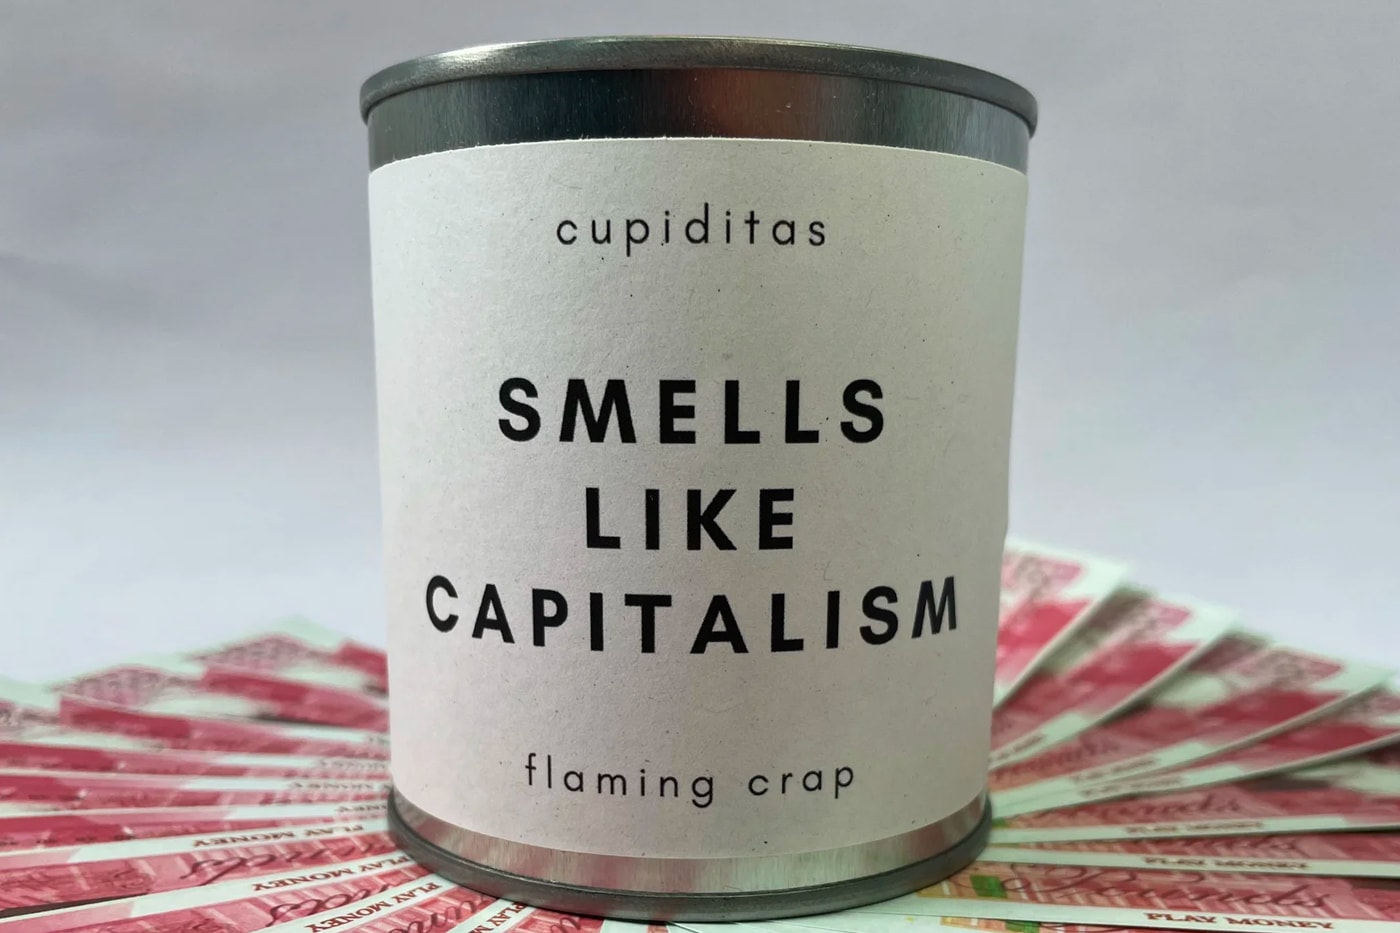 실제 돈 냄새가 나는 ‘자본주의의 냄새’ 향초가 출시됐다, 지폐, 플레이밍 크랩, 가죽 지갑